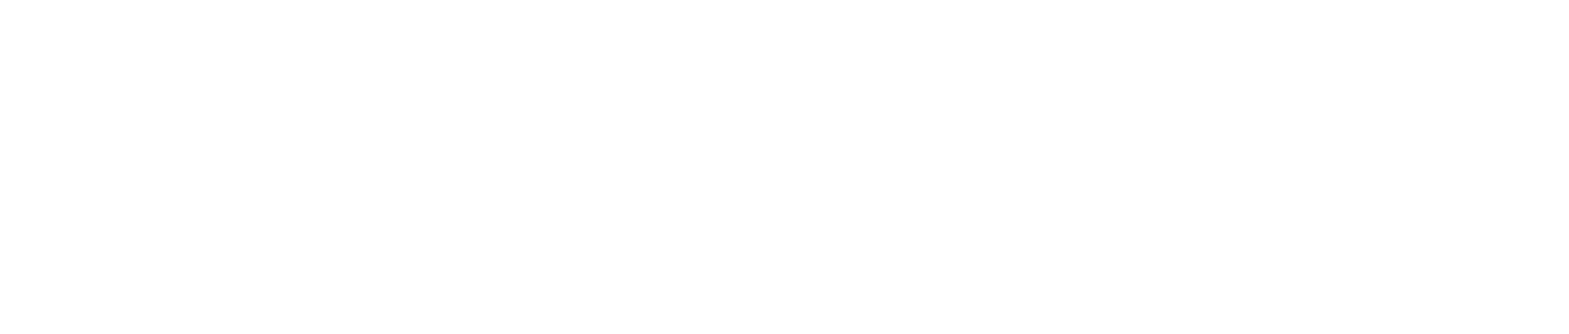 Pilbara Minerals Logo groß für dunkle Hintergründe (transparentes PNG)